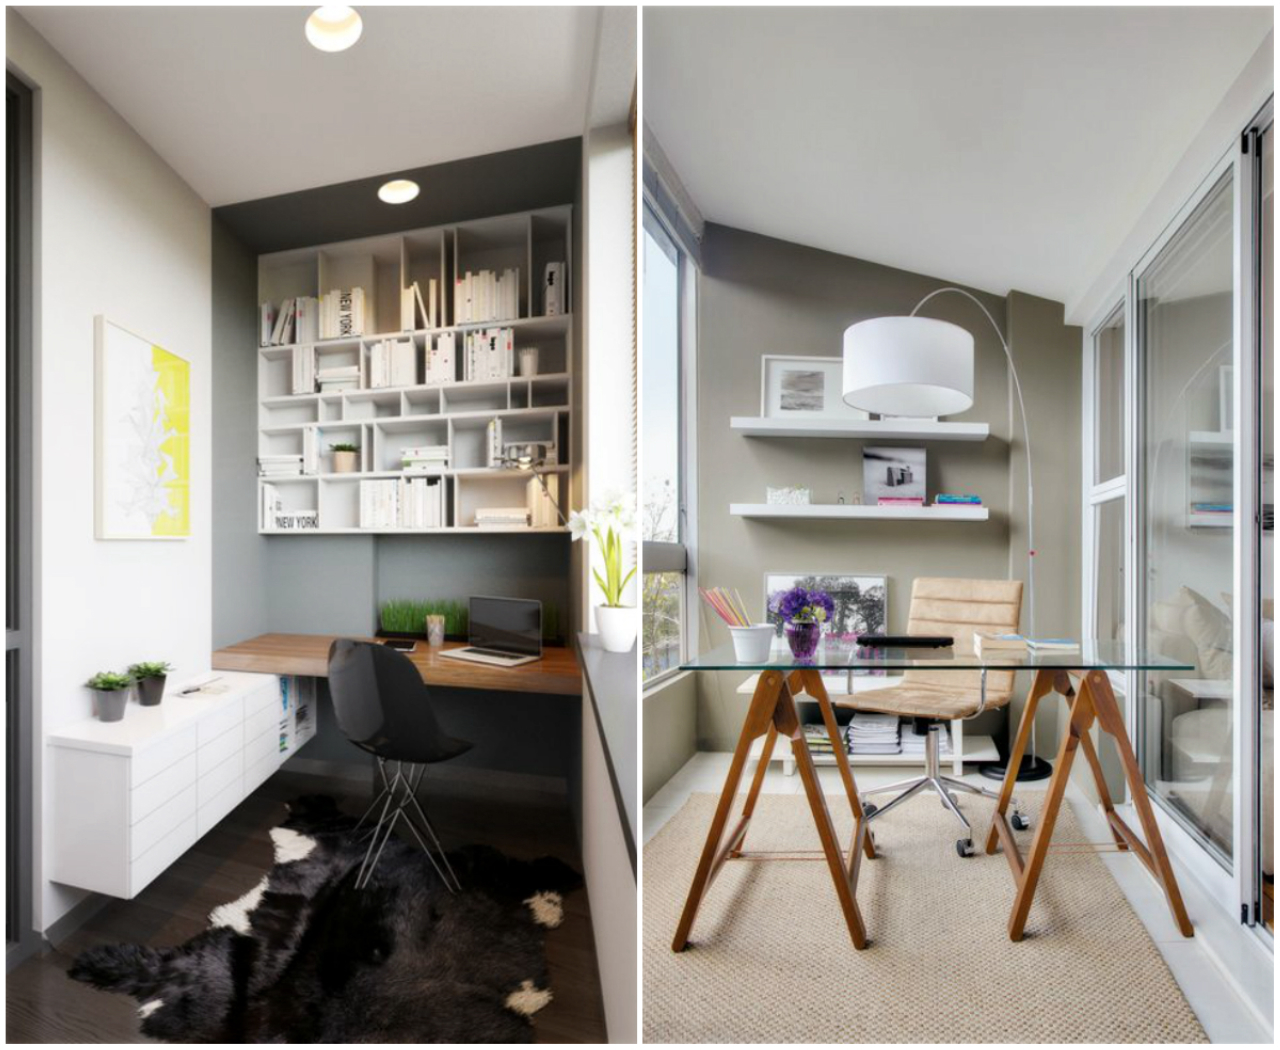 Transforme a sua sacada num lindo escritório e aposte na iluminação natural (imagem: (imagens: Home Designing e Portal Casa)